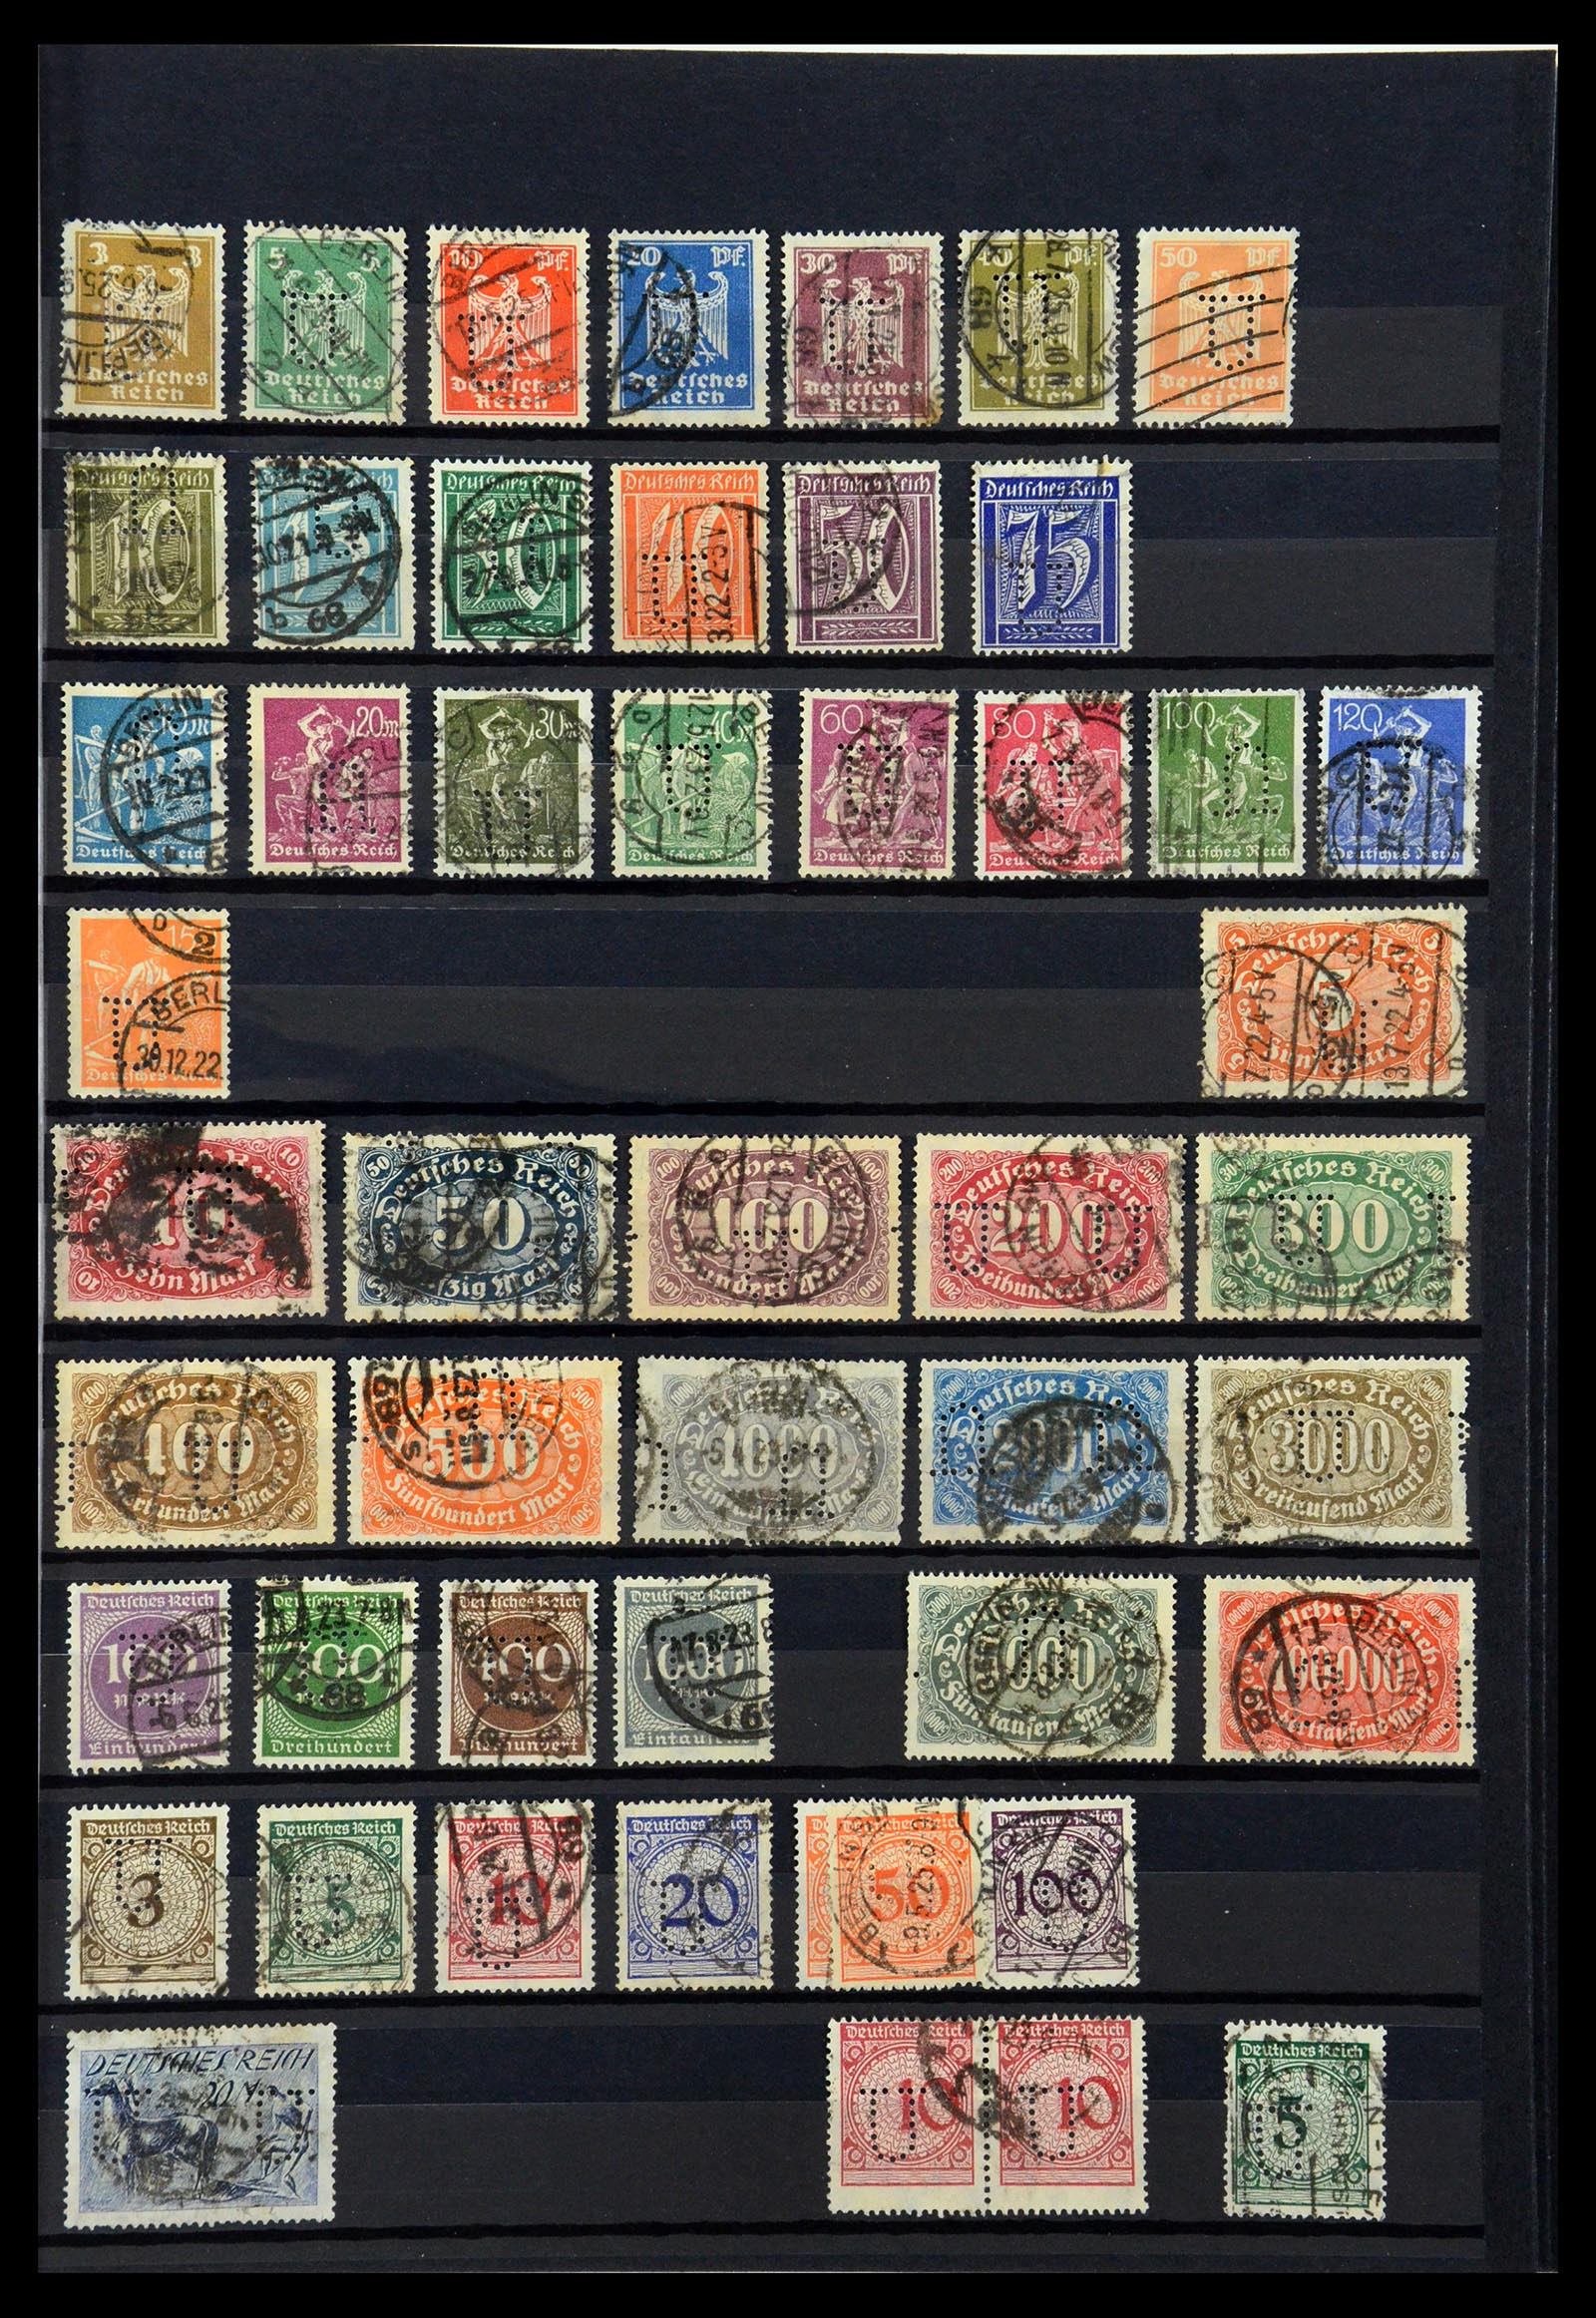 36405 318 - Stamp collection 36405 German Reich perfins 1880-1945.